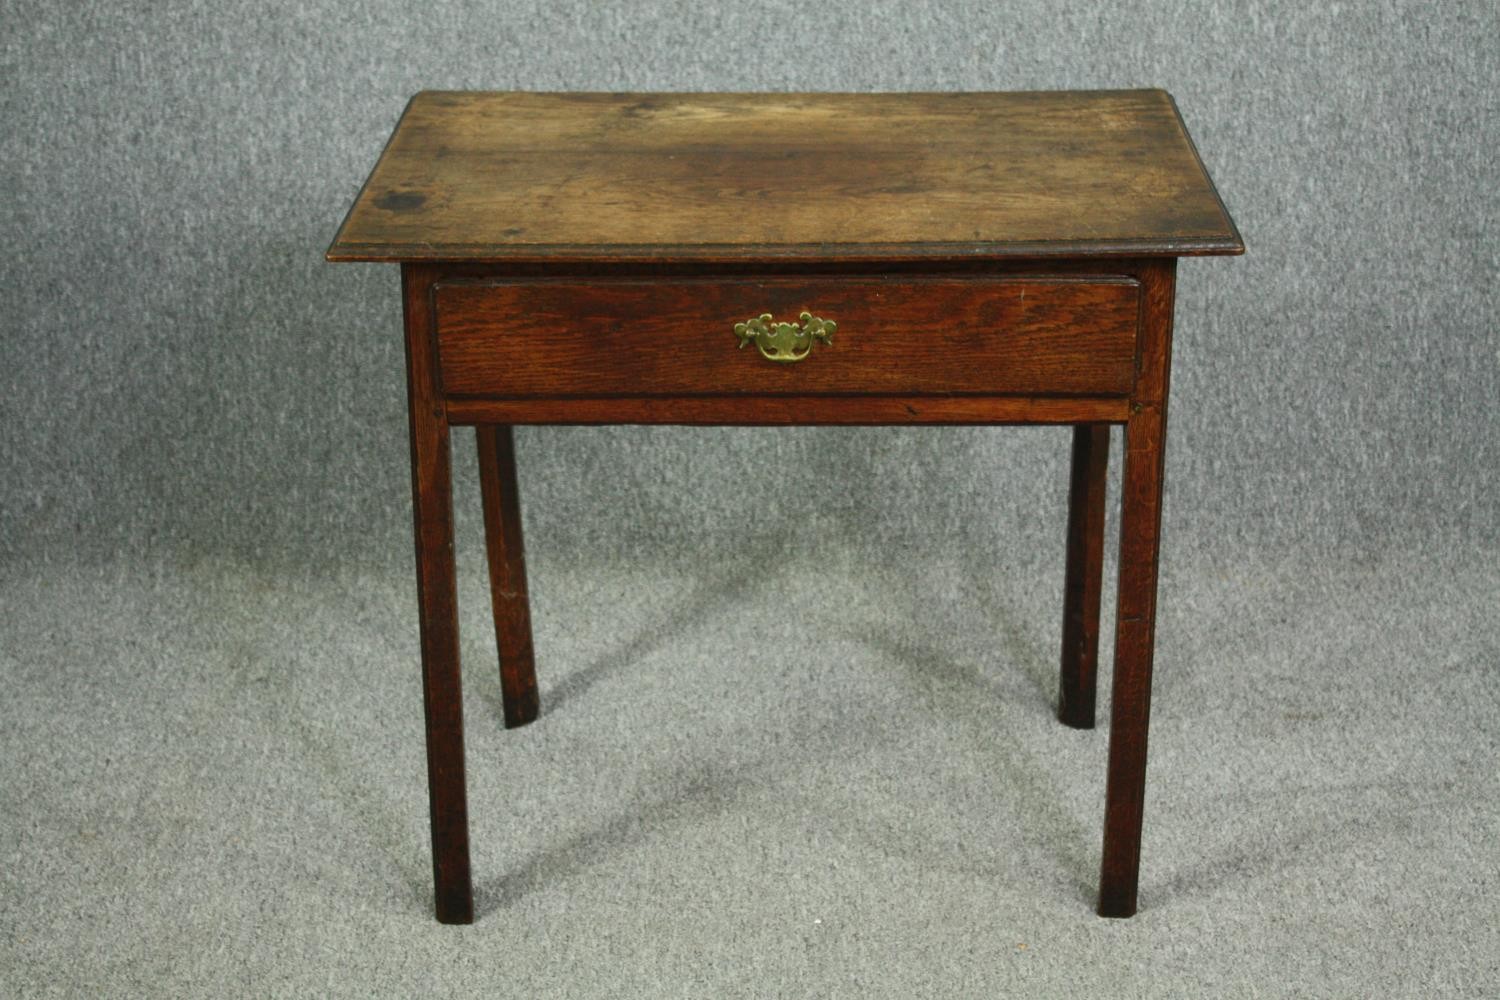 Side table, Georgian oak. H.71 W.79 D.52cm.